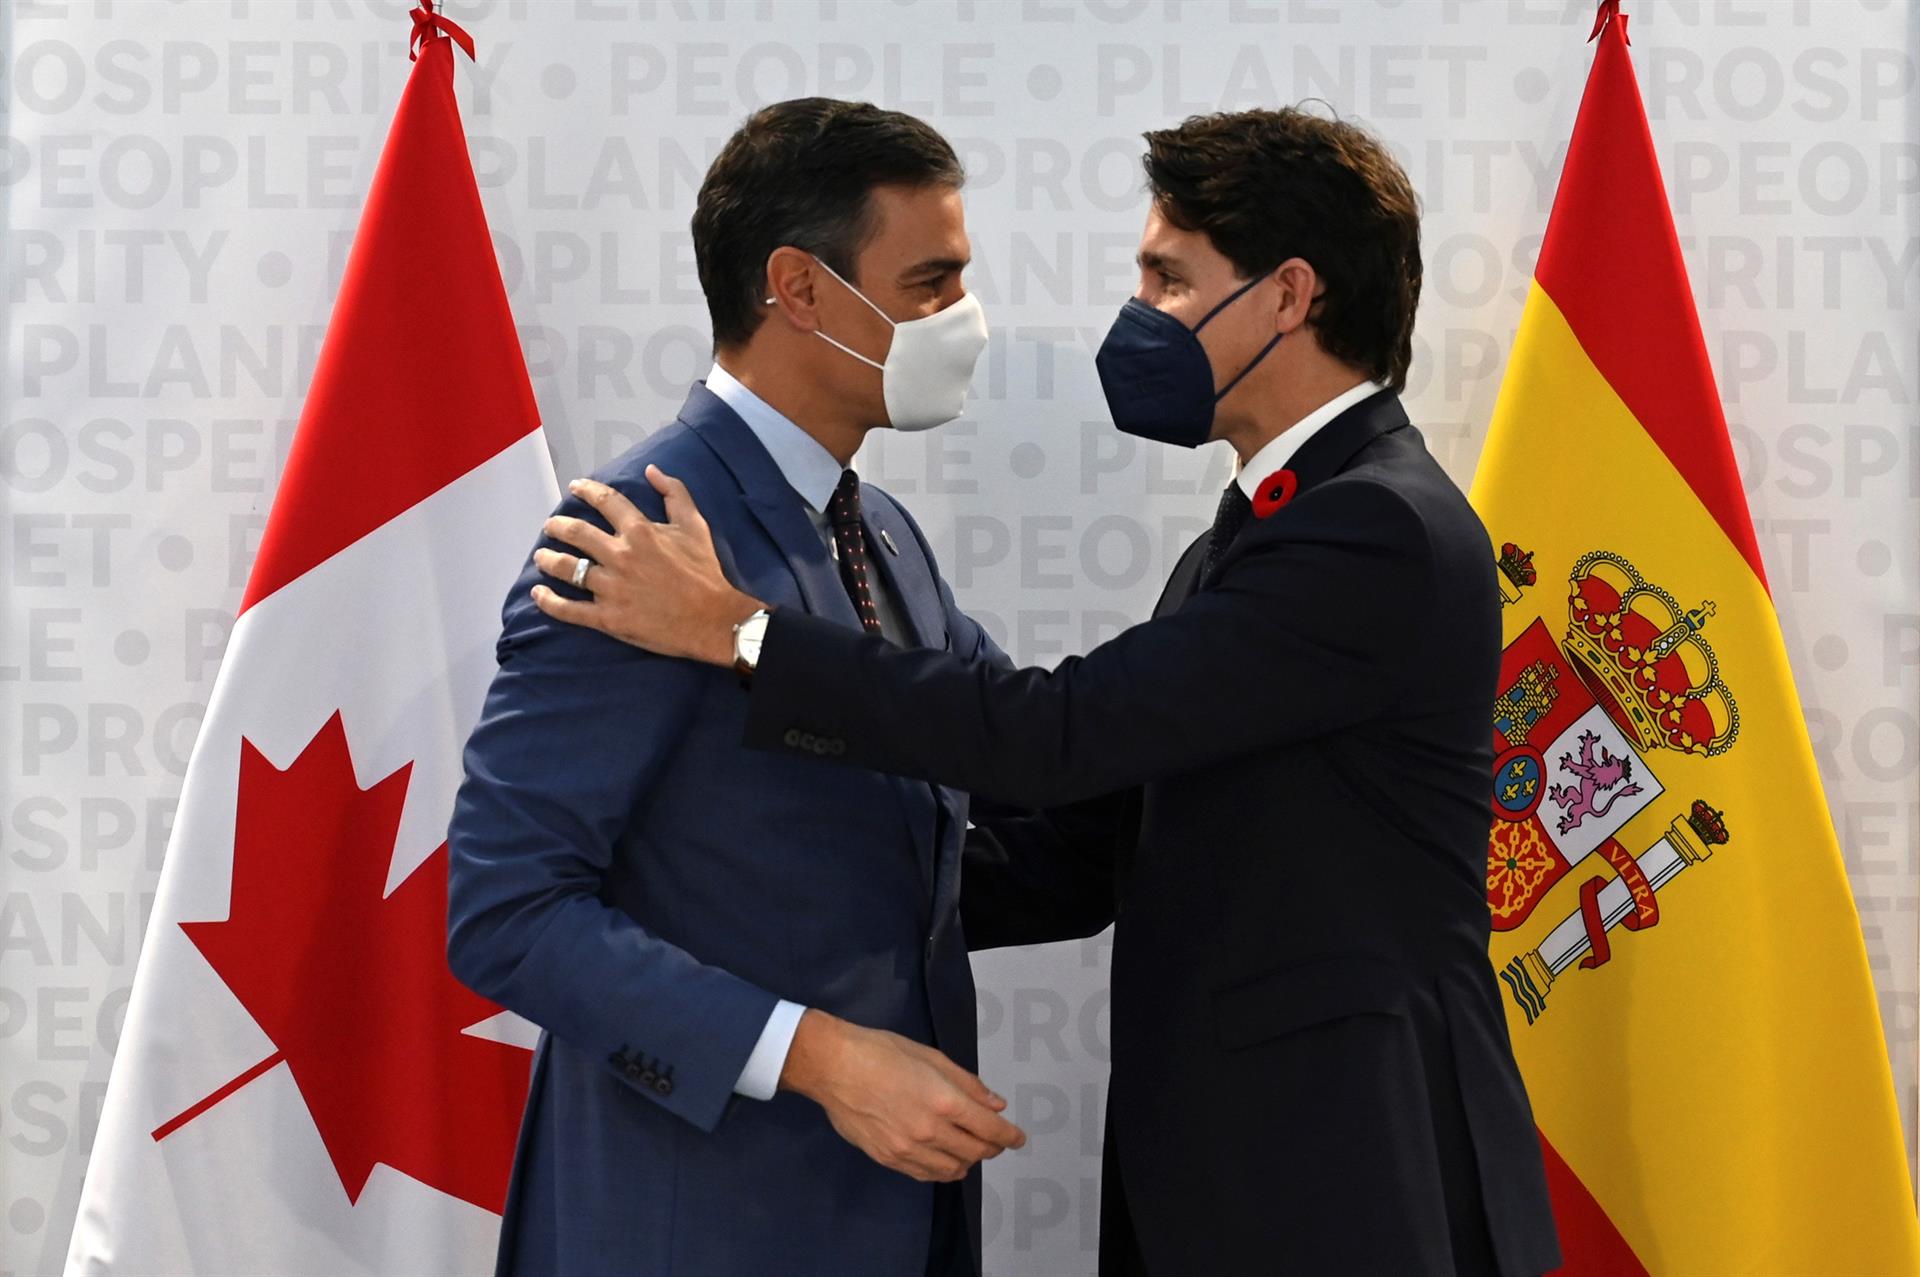 La crisis en Venezuela, tema de importancia en la reunión Sánchez-Trudeau en Roma